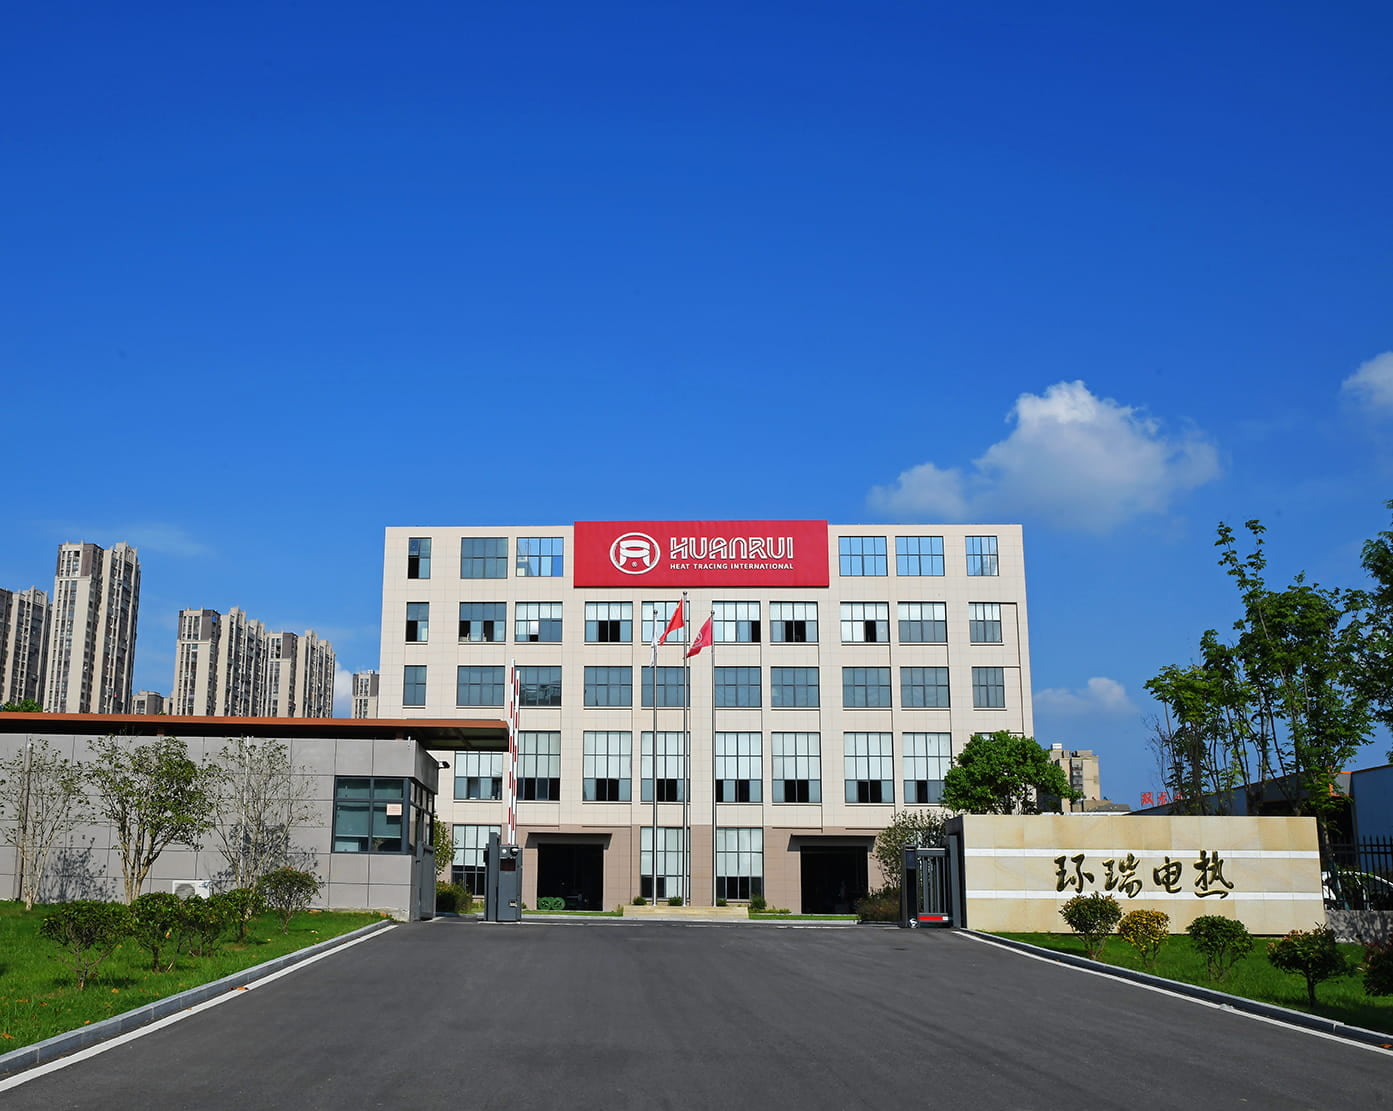 Celebre calorosamente a oferta bem-sucedida da Anhui Huanrui para o projeto de aquisição de acessórios e cinto de aquecimento elétrico CNPC
